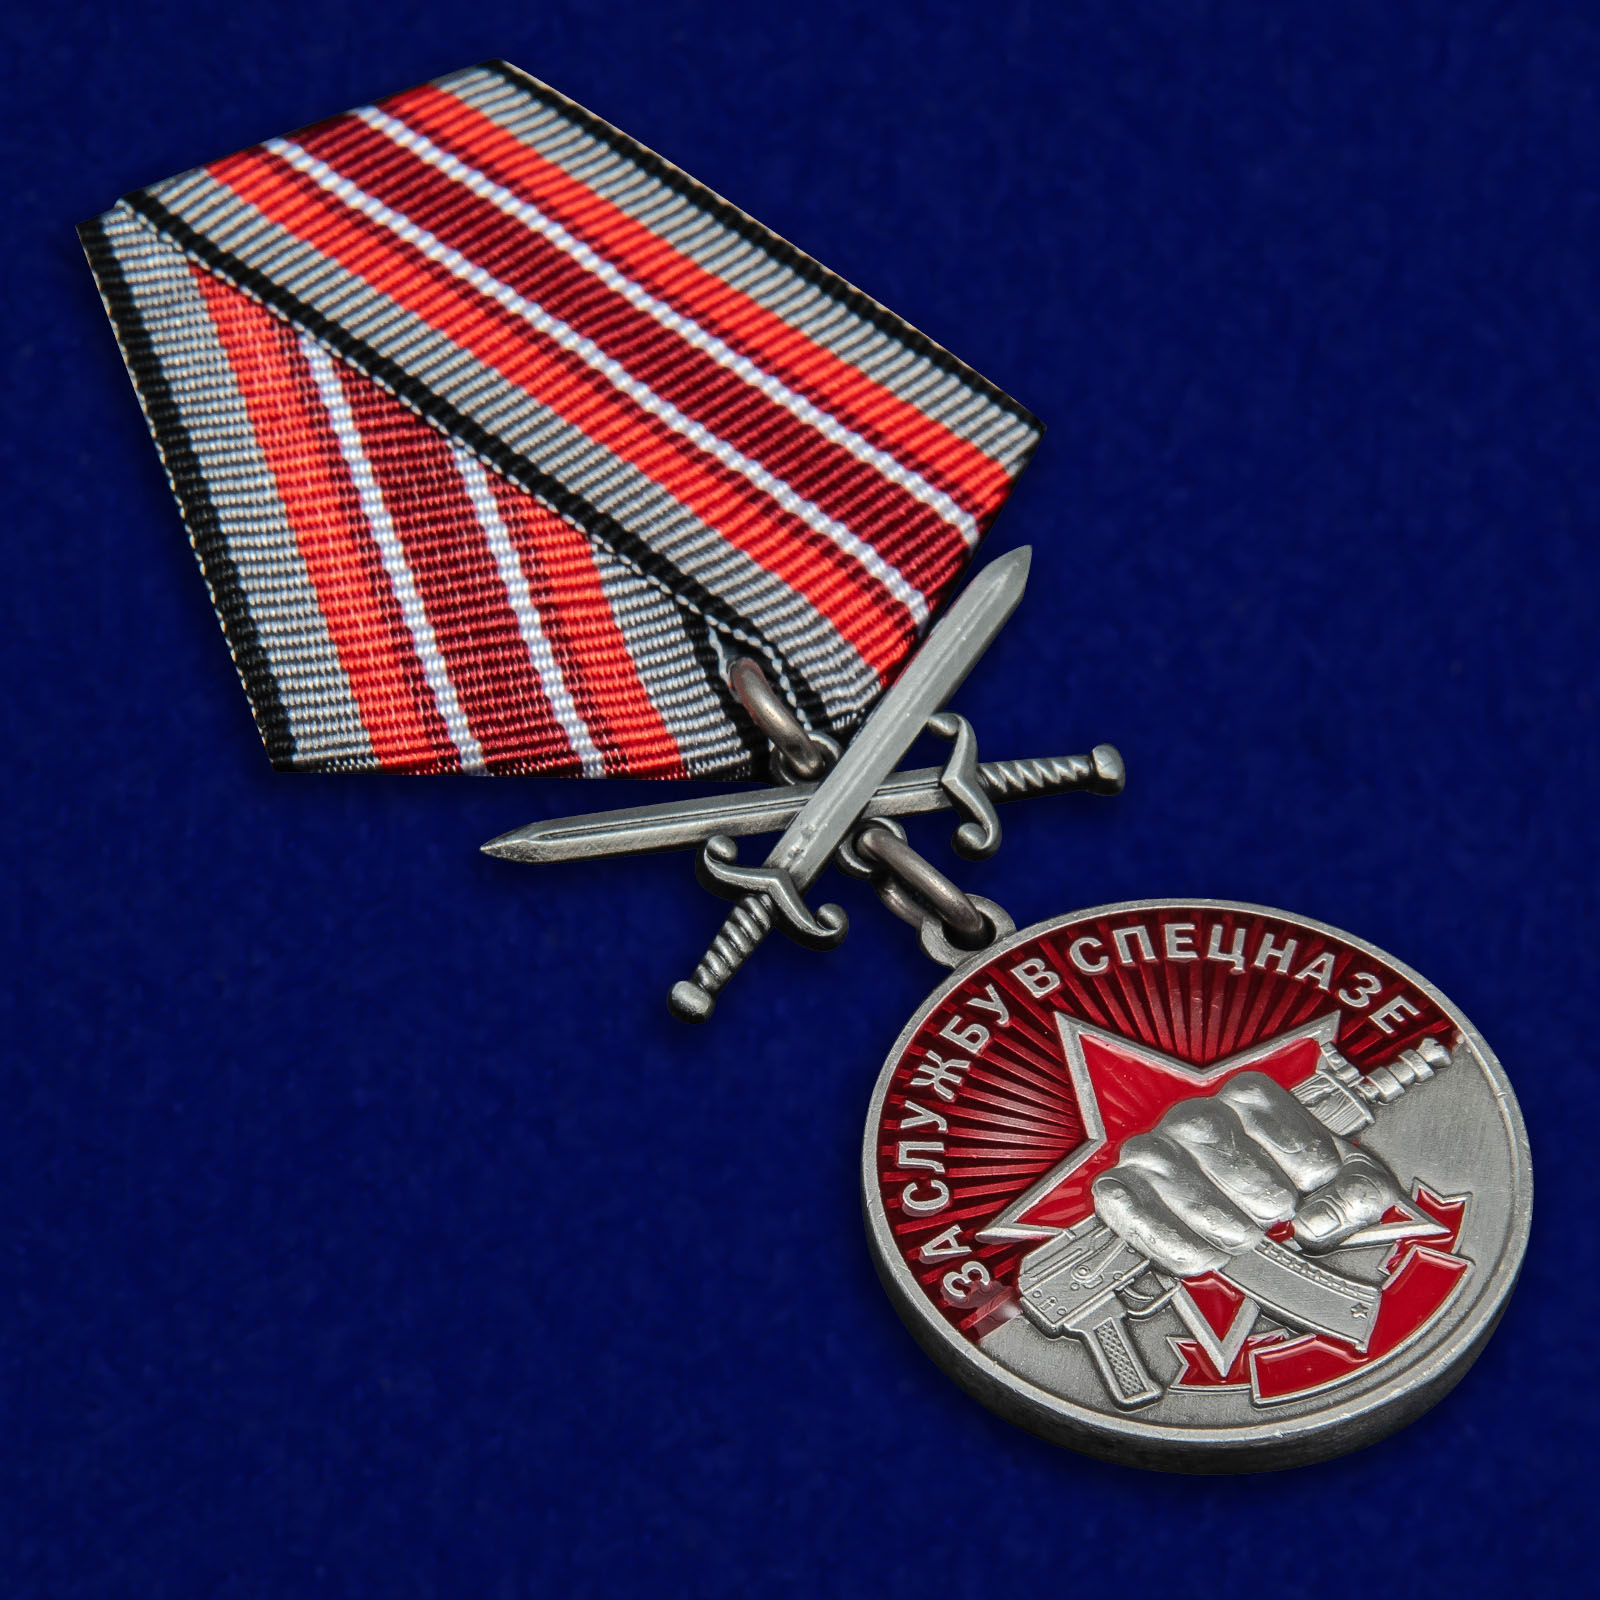 Купить медаль "За службу в Спецназе" 